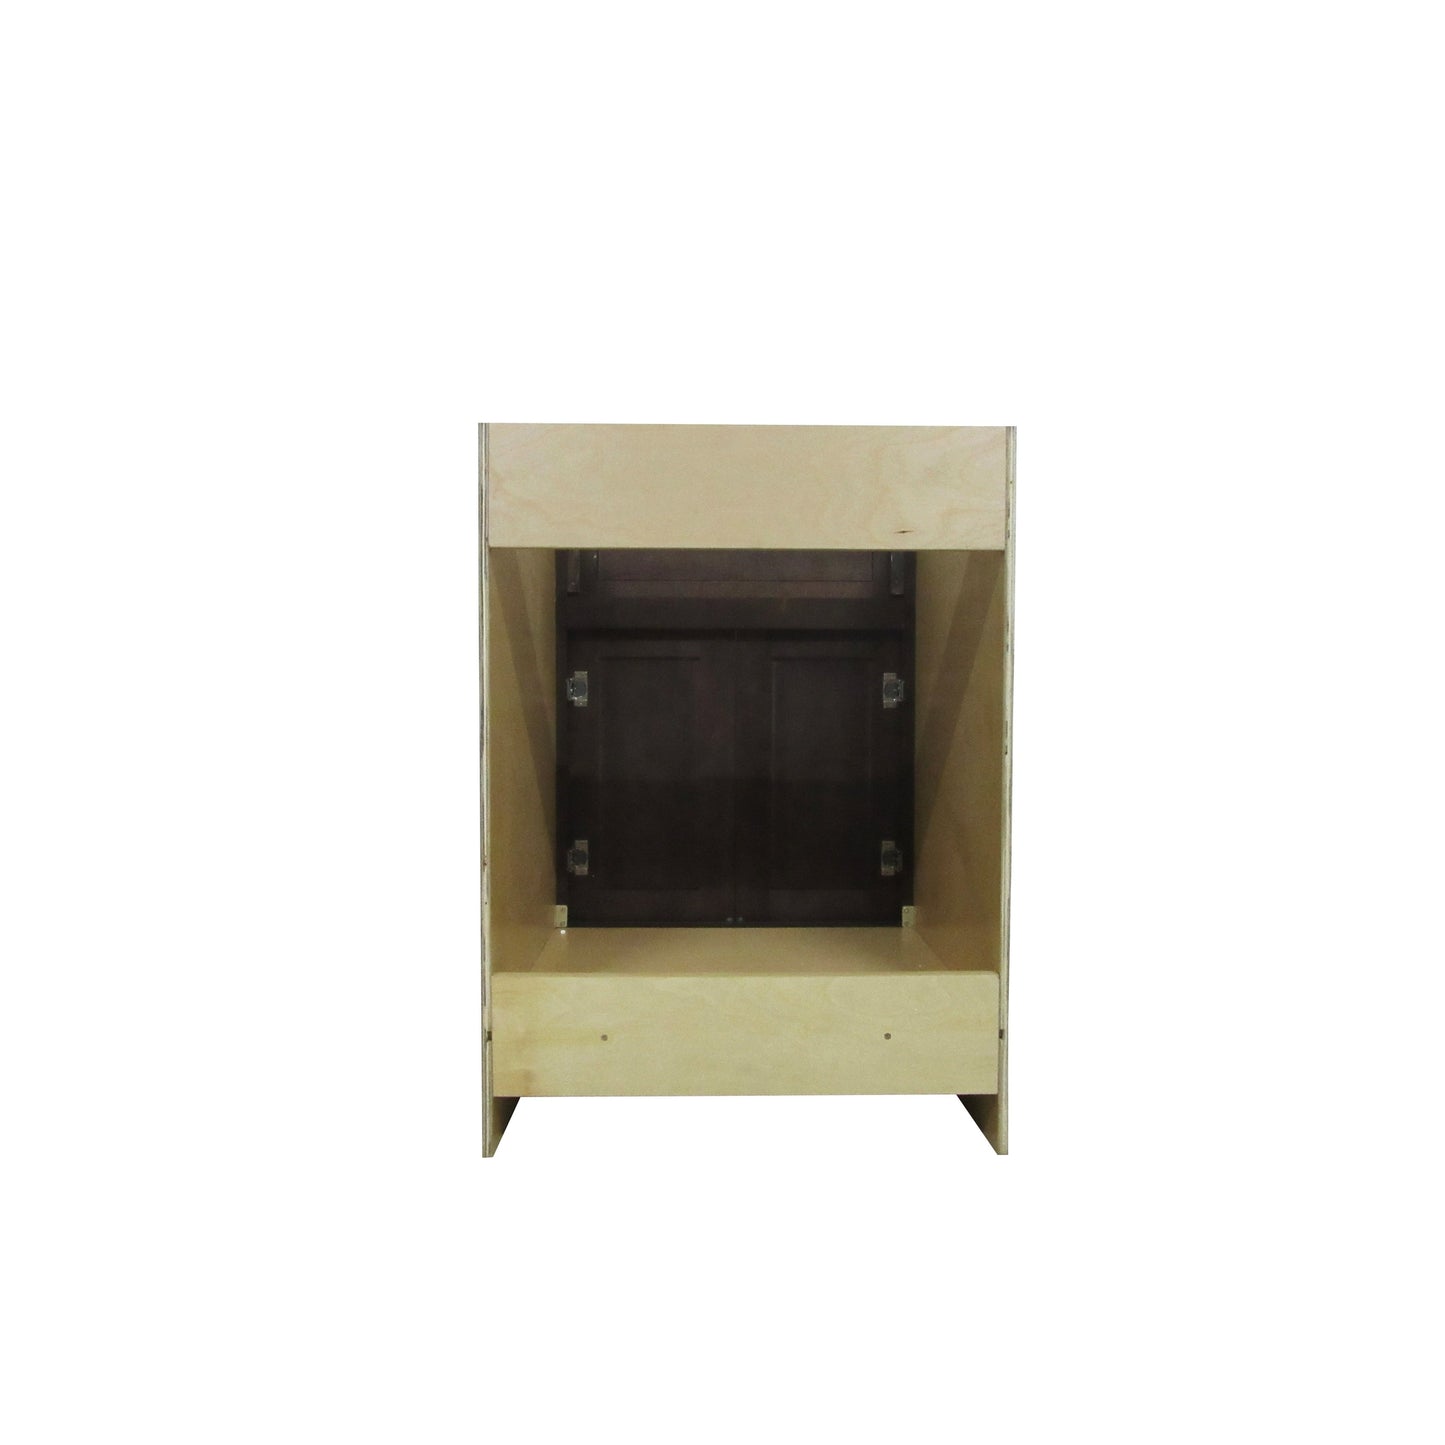 Vanity Art 24" Gray Freestanding Solid Wood Vanity Cabinet With Double Soft Closing Doors